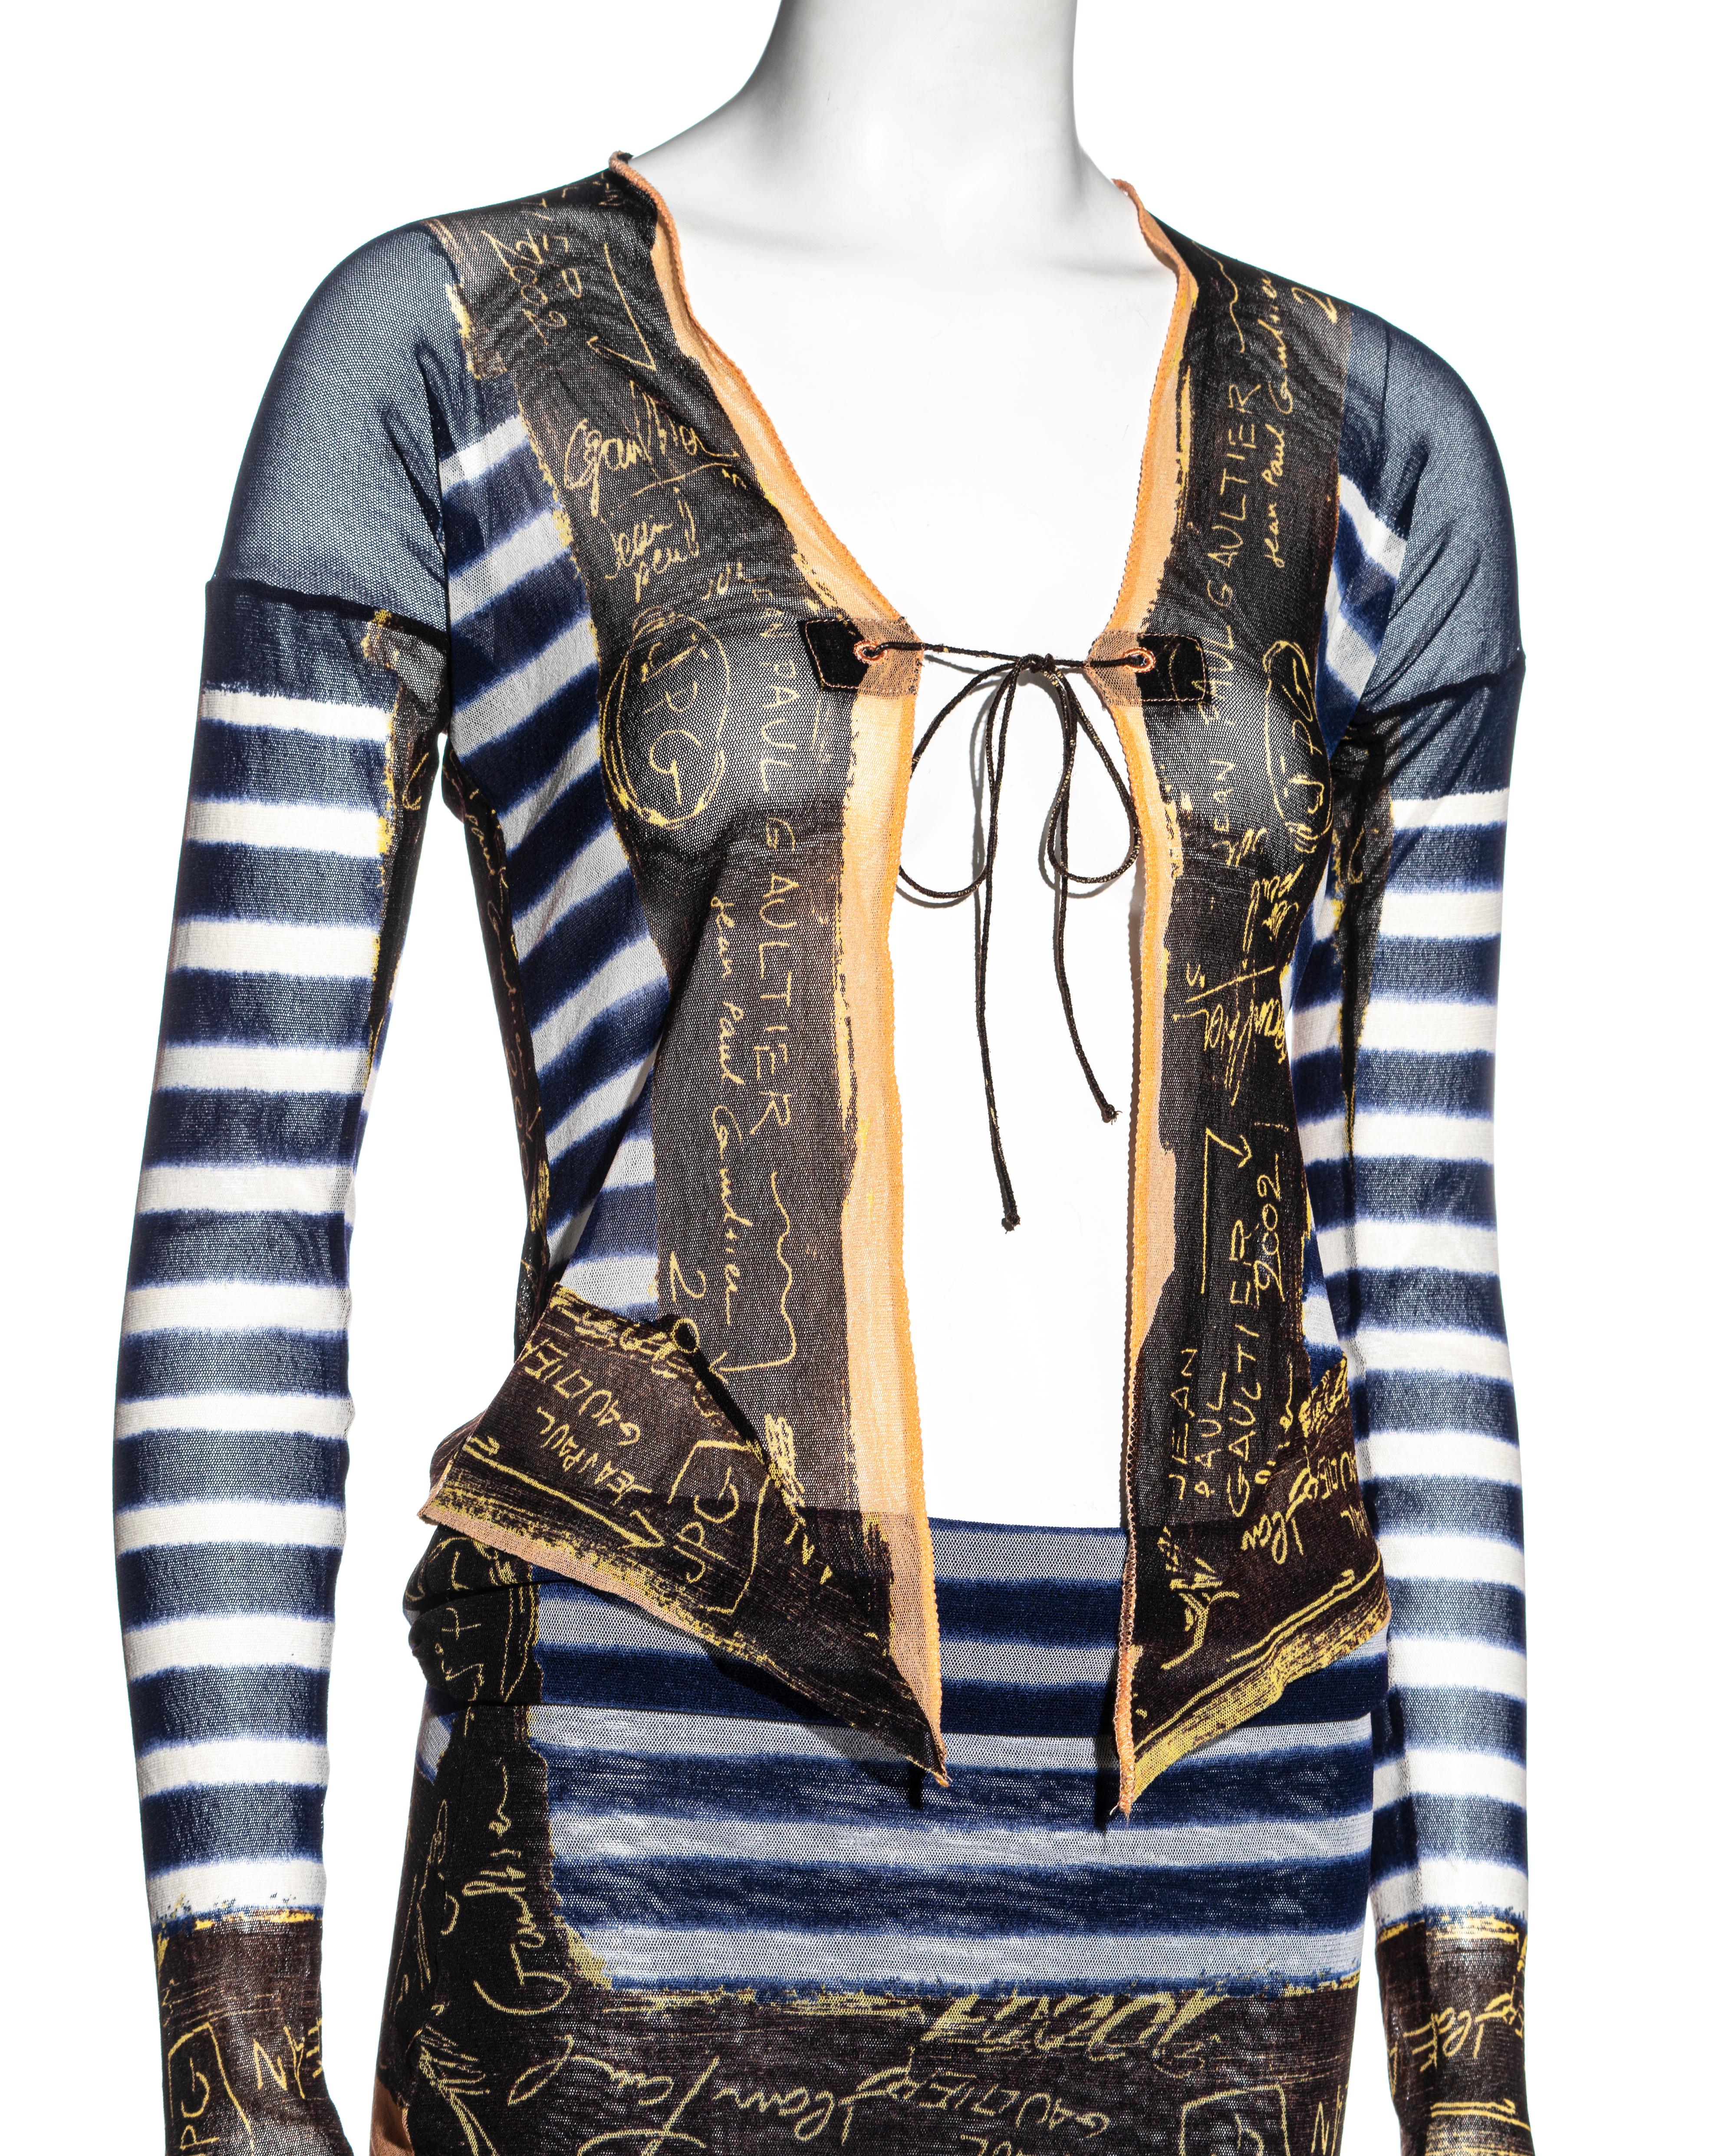 Jean Paul Gaultier Marinefarben gestreiftes Kleid und Strickjacke aus Nylonnetz, ca. 2001 Damen